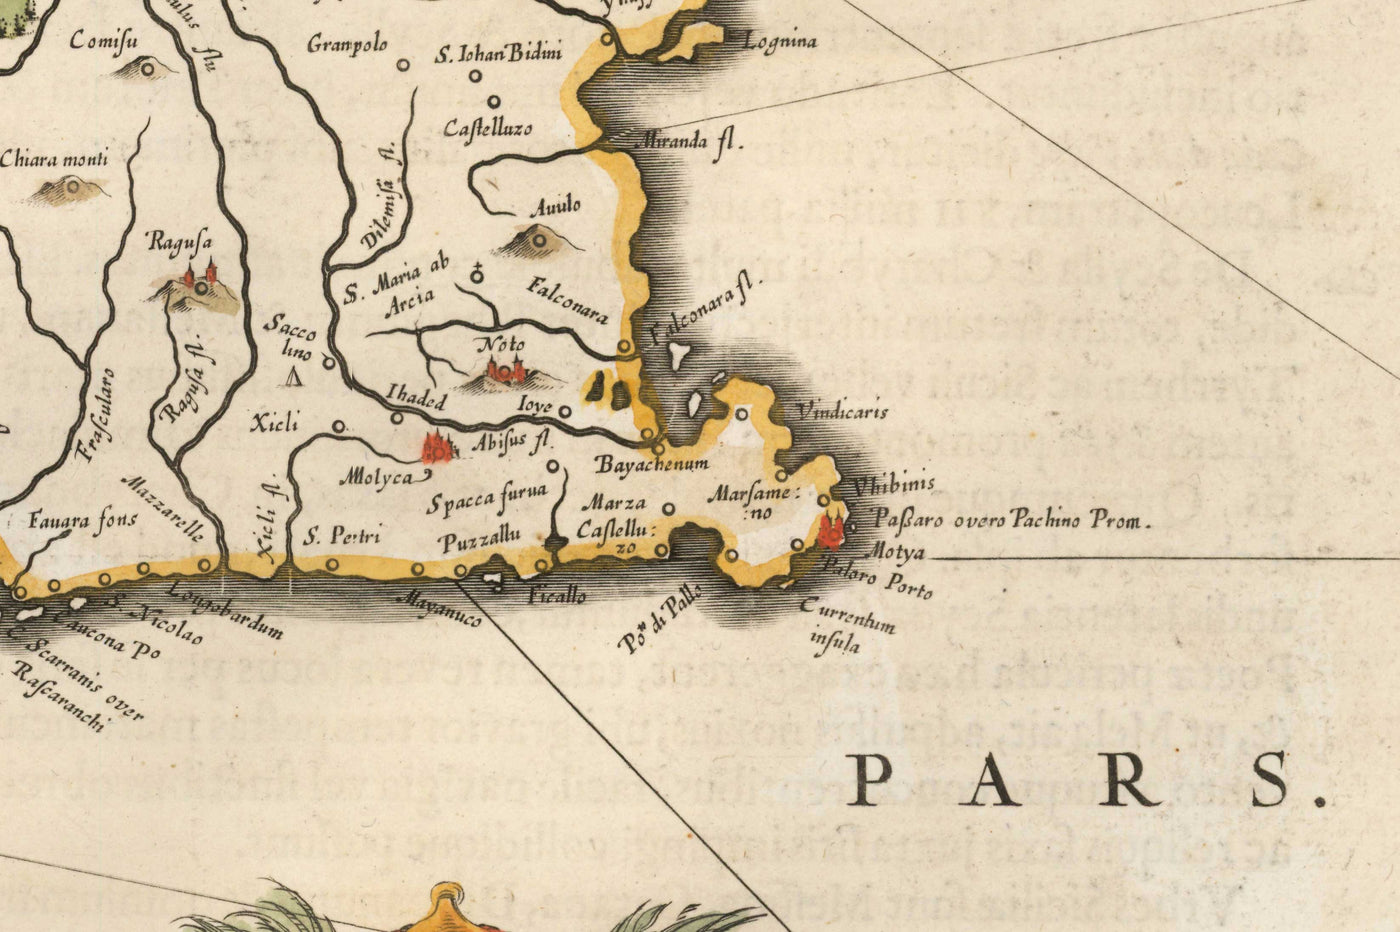 Mapa antiguo de Sicilia en 1640 por Willem Blaeu - Palermo, Catania, Marsala, Mediterráneo, Messina